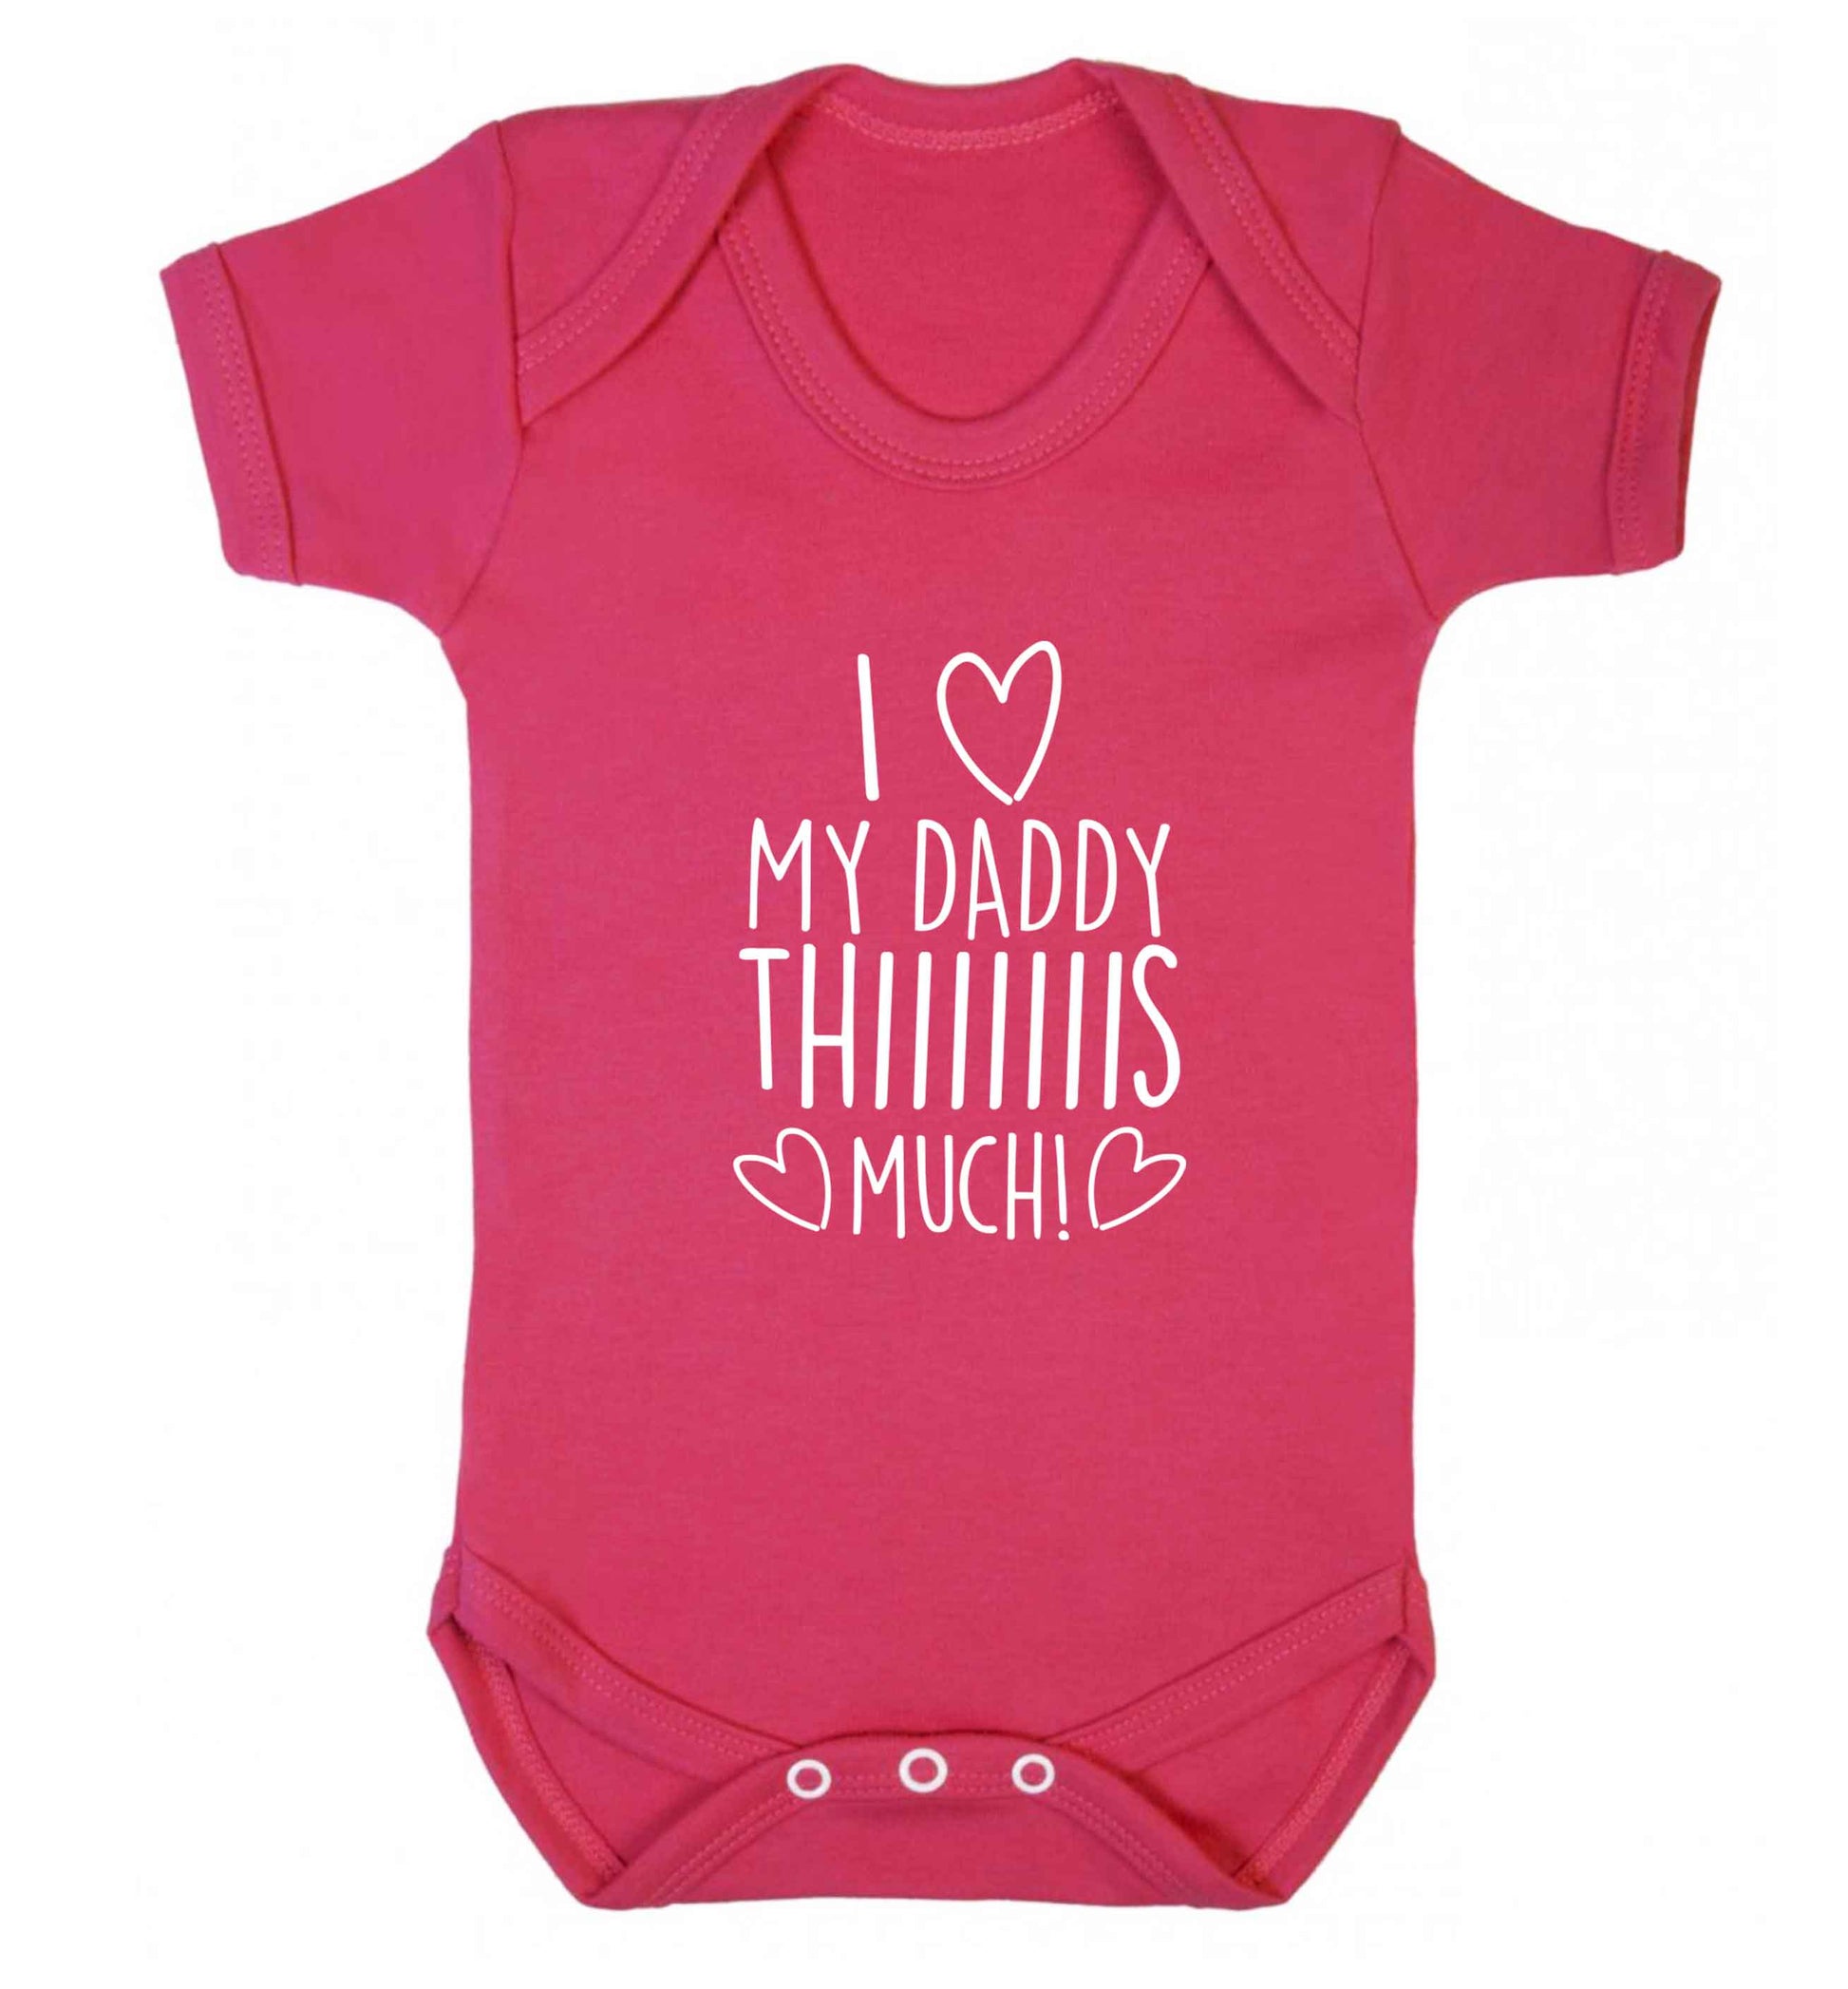 I love my daddy thiiiiis much! baby vest dark pink 18-24 months